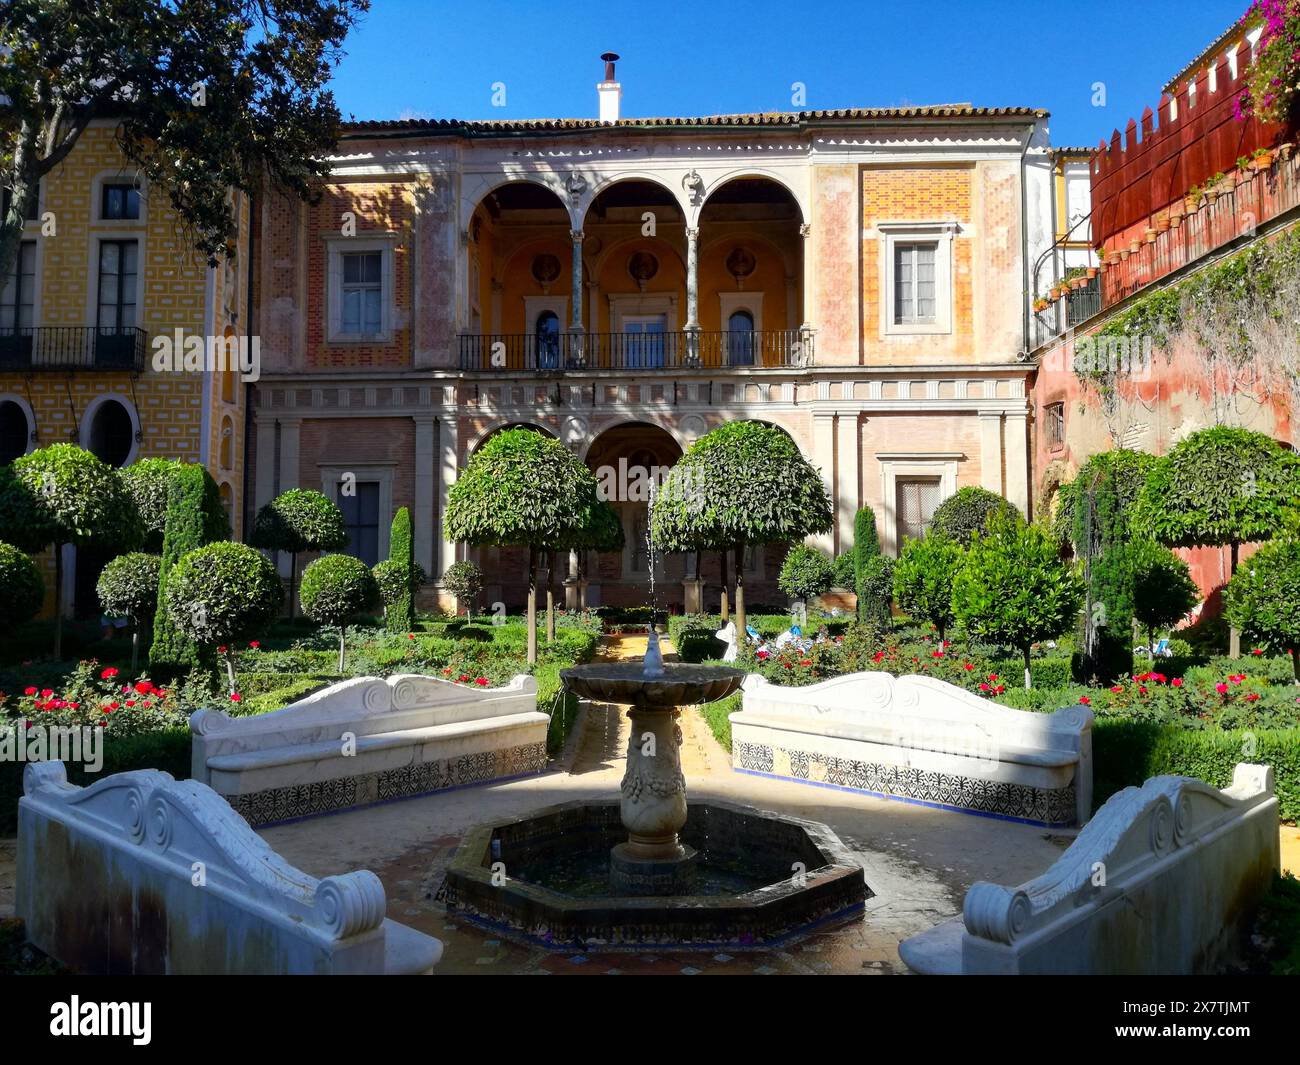 Jardín Grand jardin conçu par Benbenuto Tortello dans le palais du xvie siècle Casa de Pilatos à Séville, Andalousie, Espagne Banque D'Images